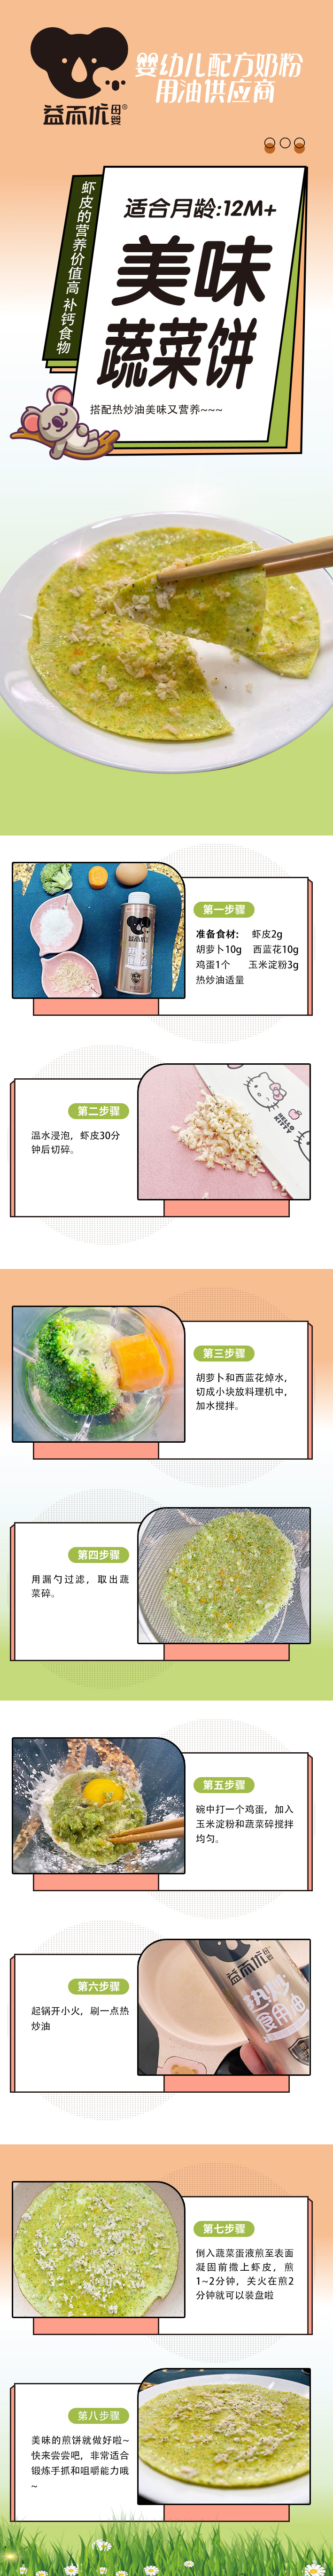 益而优美味蔬菜饼 (2).jpg